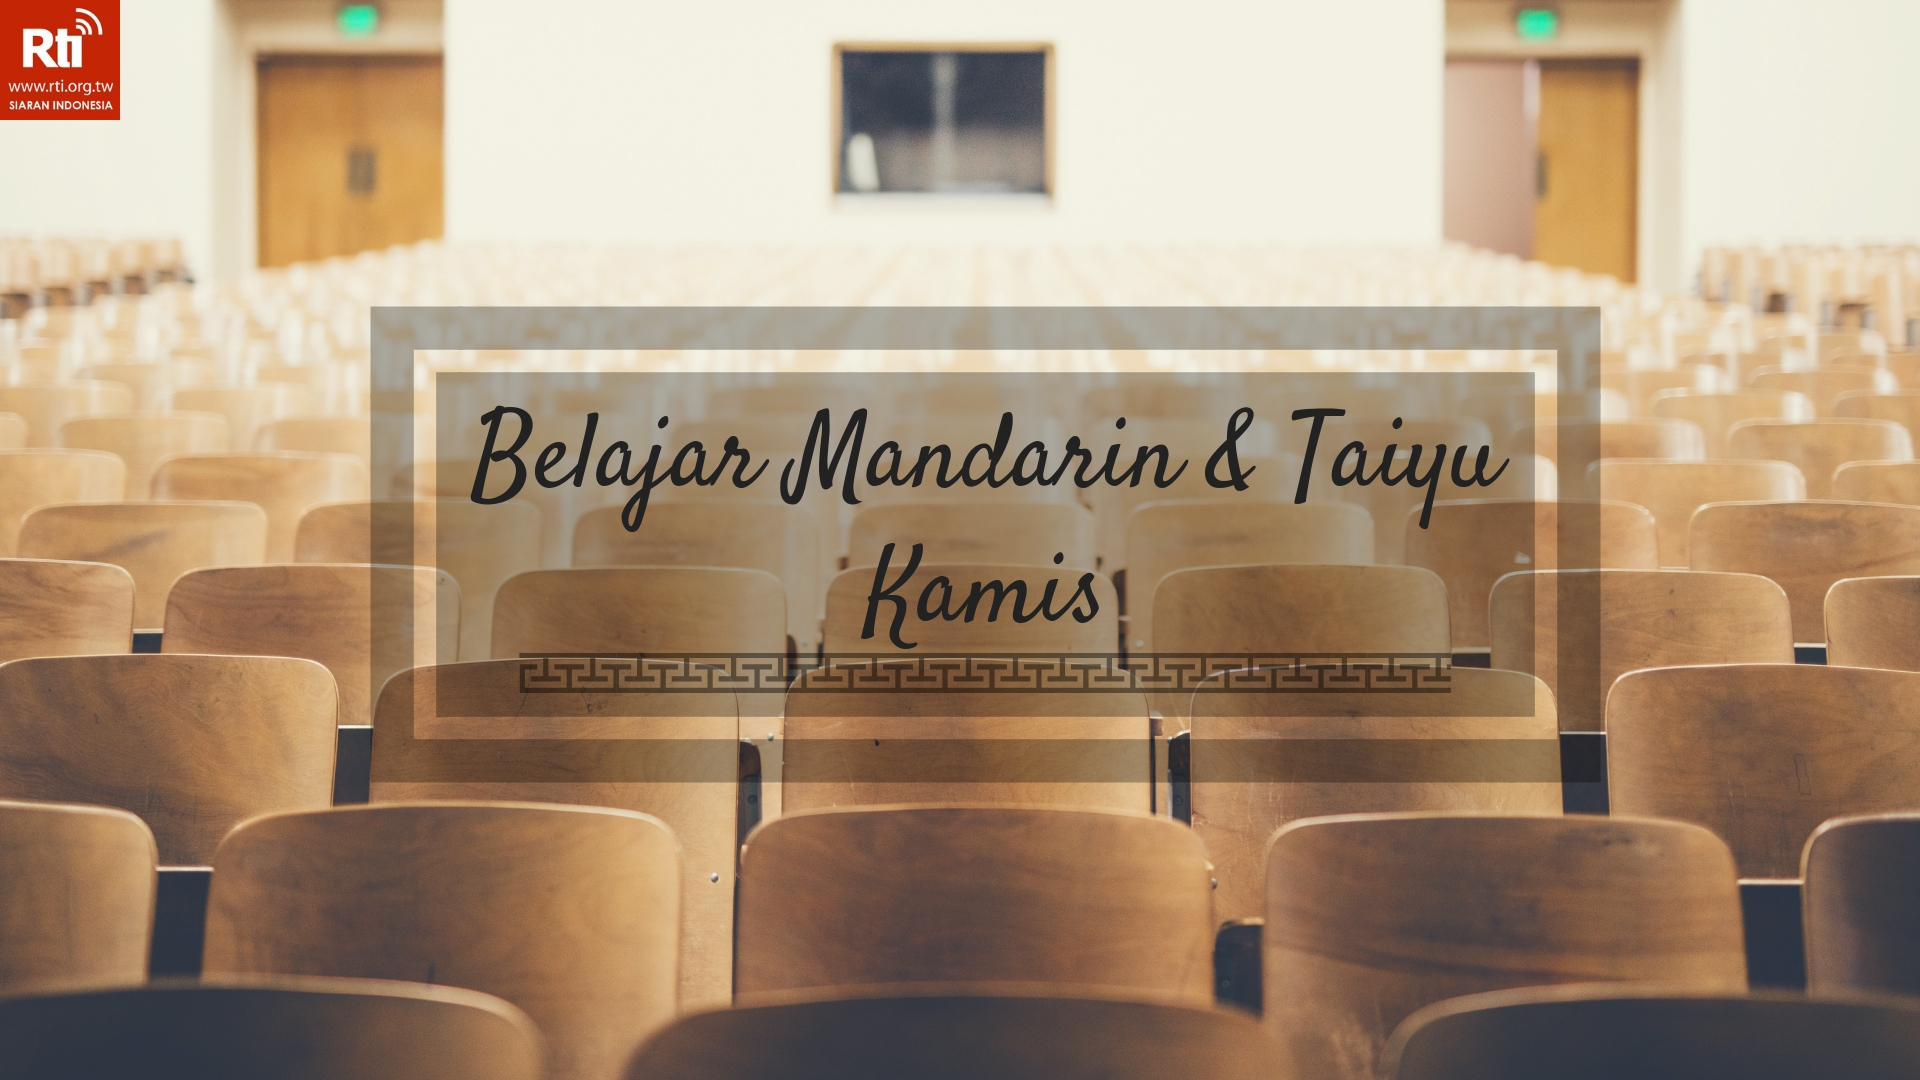 Belajar Mandarin taiyu dan Bahasa Indonesia muda 年輕